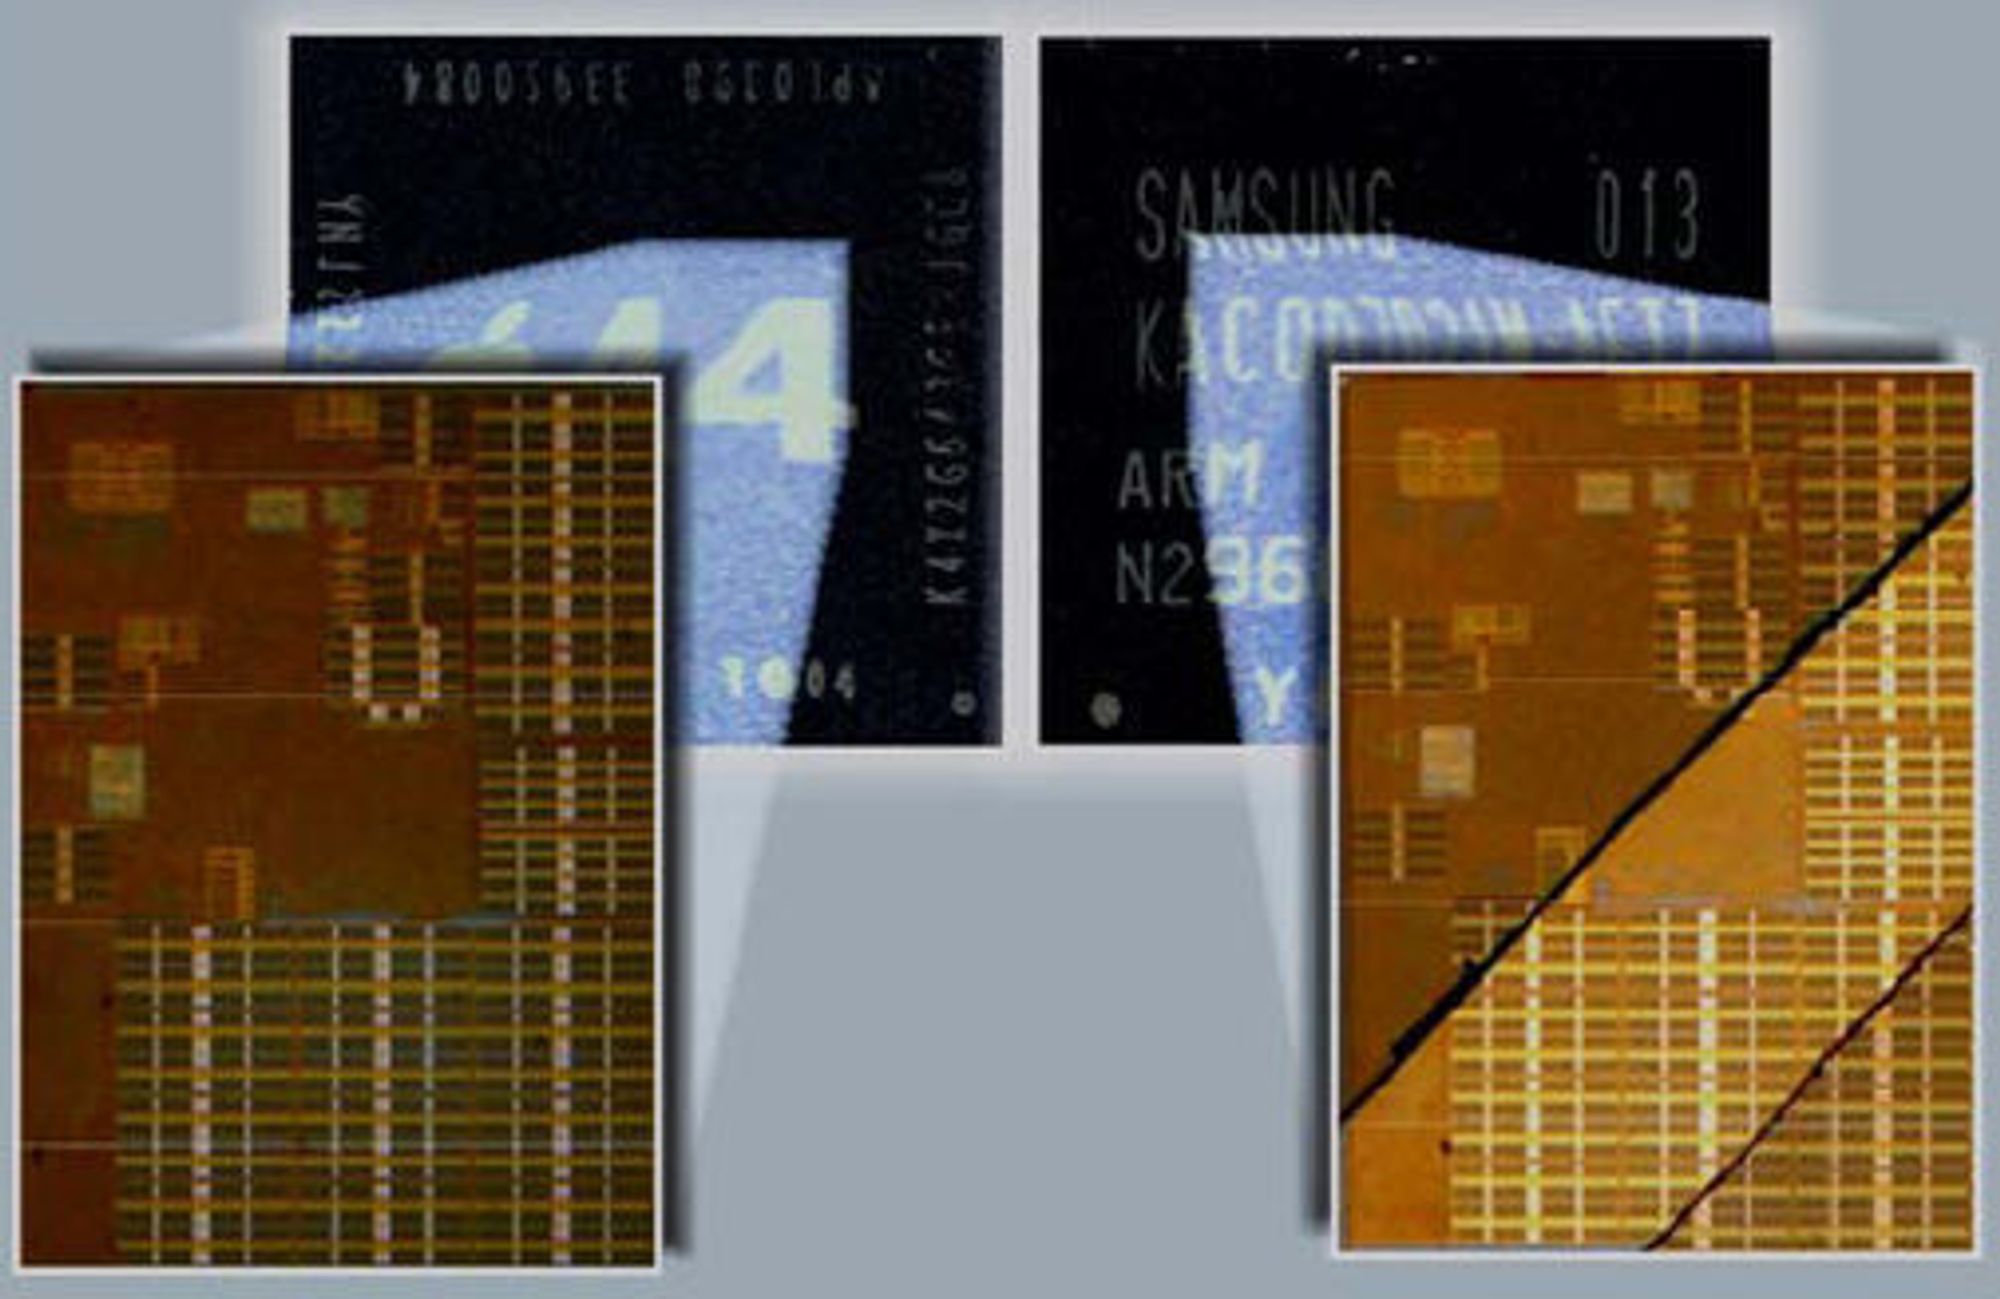 Apples A4-prosessor til venstre, Samsungs S5PC110A01-prosessor til høyre.